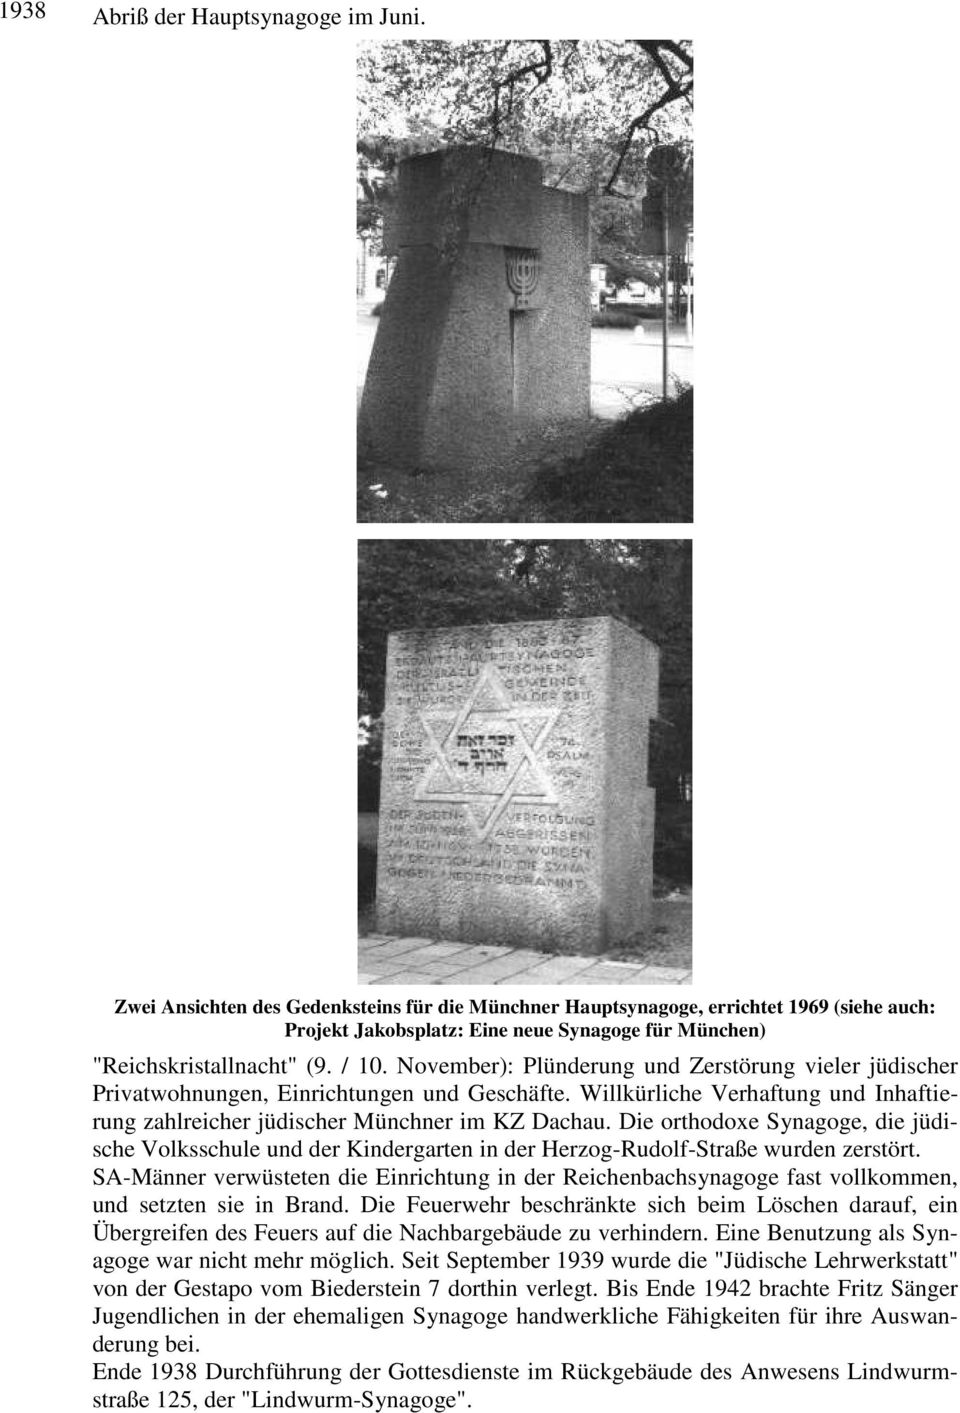 November): Plünderung und Zerstörung vieler jüdischer Privatwohnungen, Einrichtungen und Geschäfte. Willkürliche Verhaftung und Inhaftierung zahlreicher jüdischer Münchner im KZ Dachau.